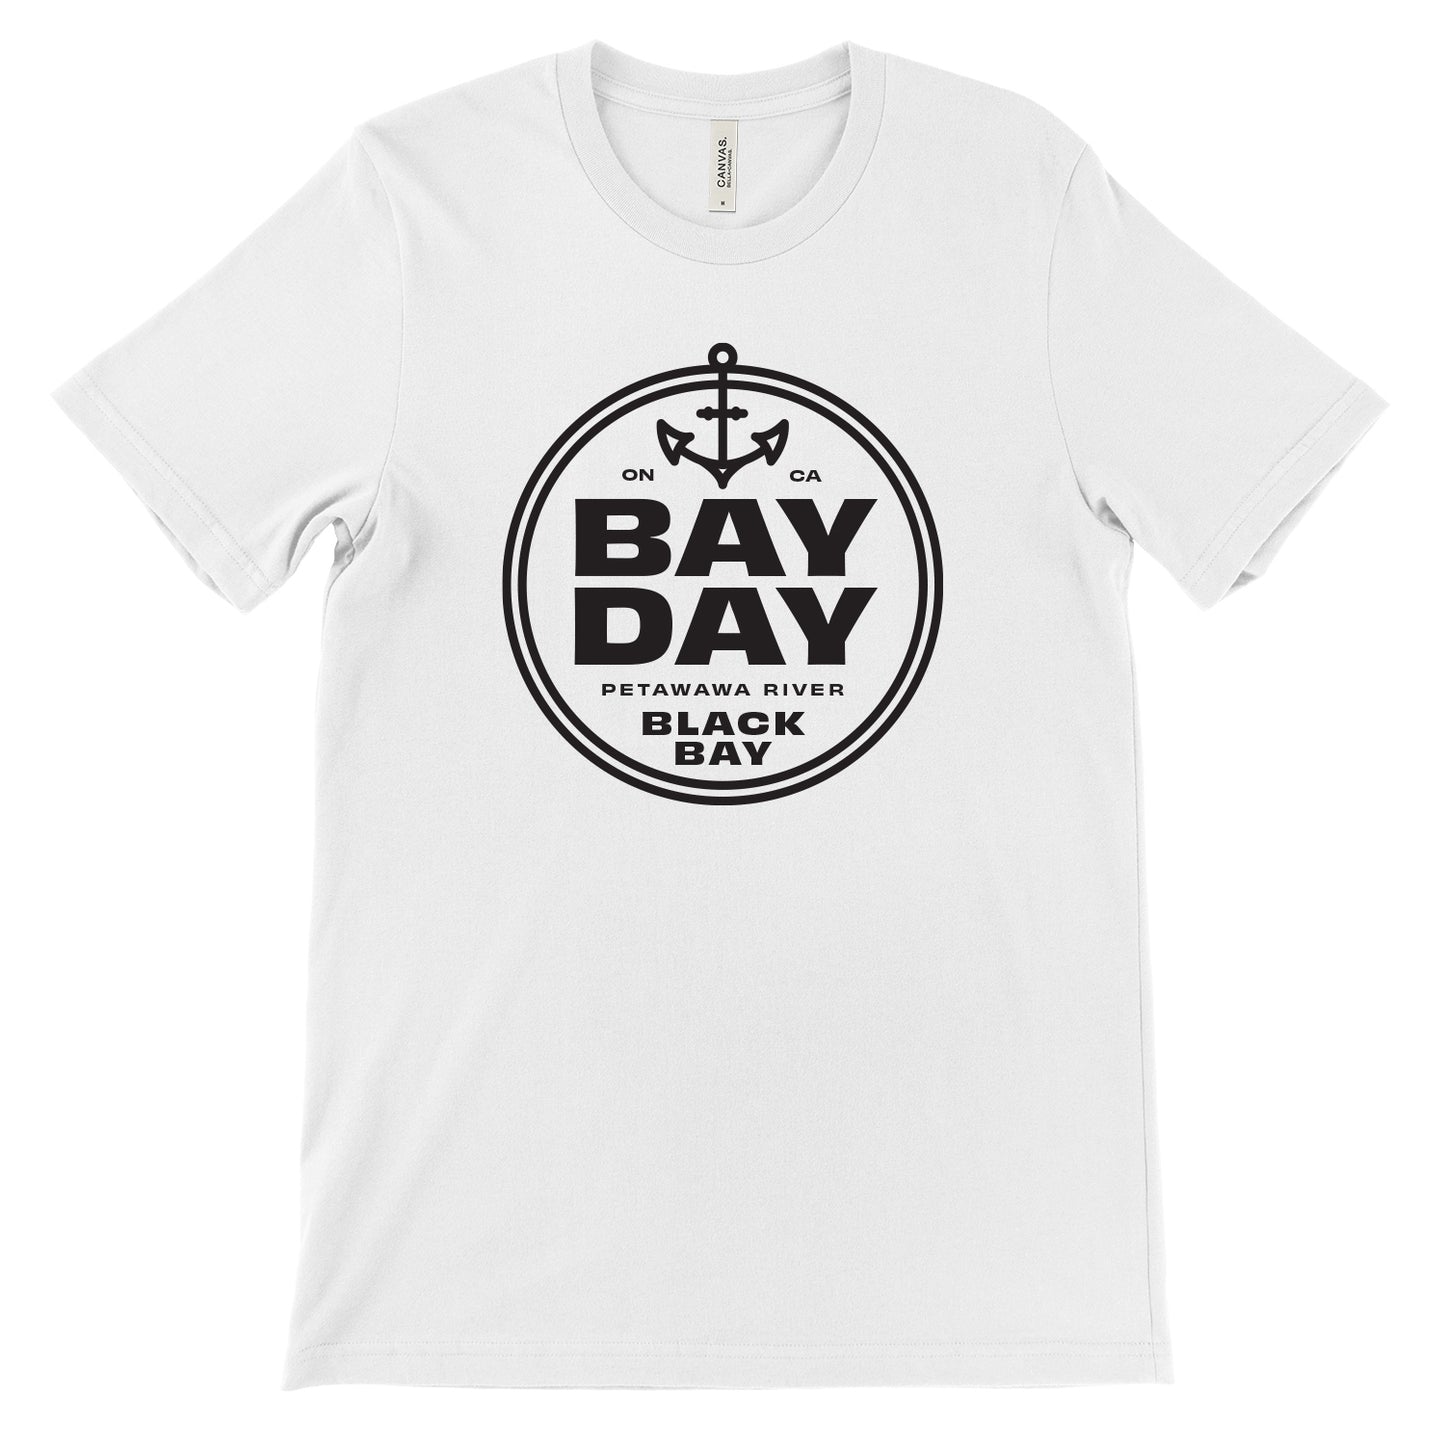 Bay Day Black Bay T-Shirt - White - Unisex